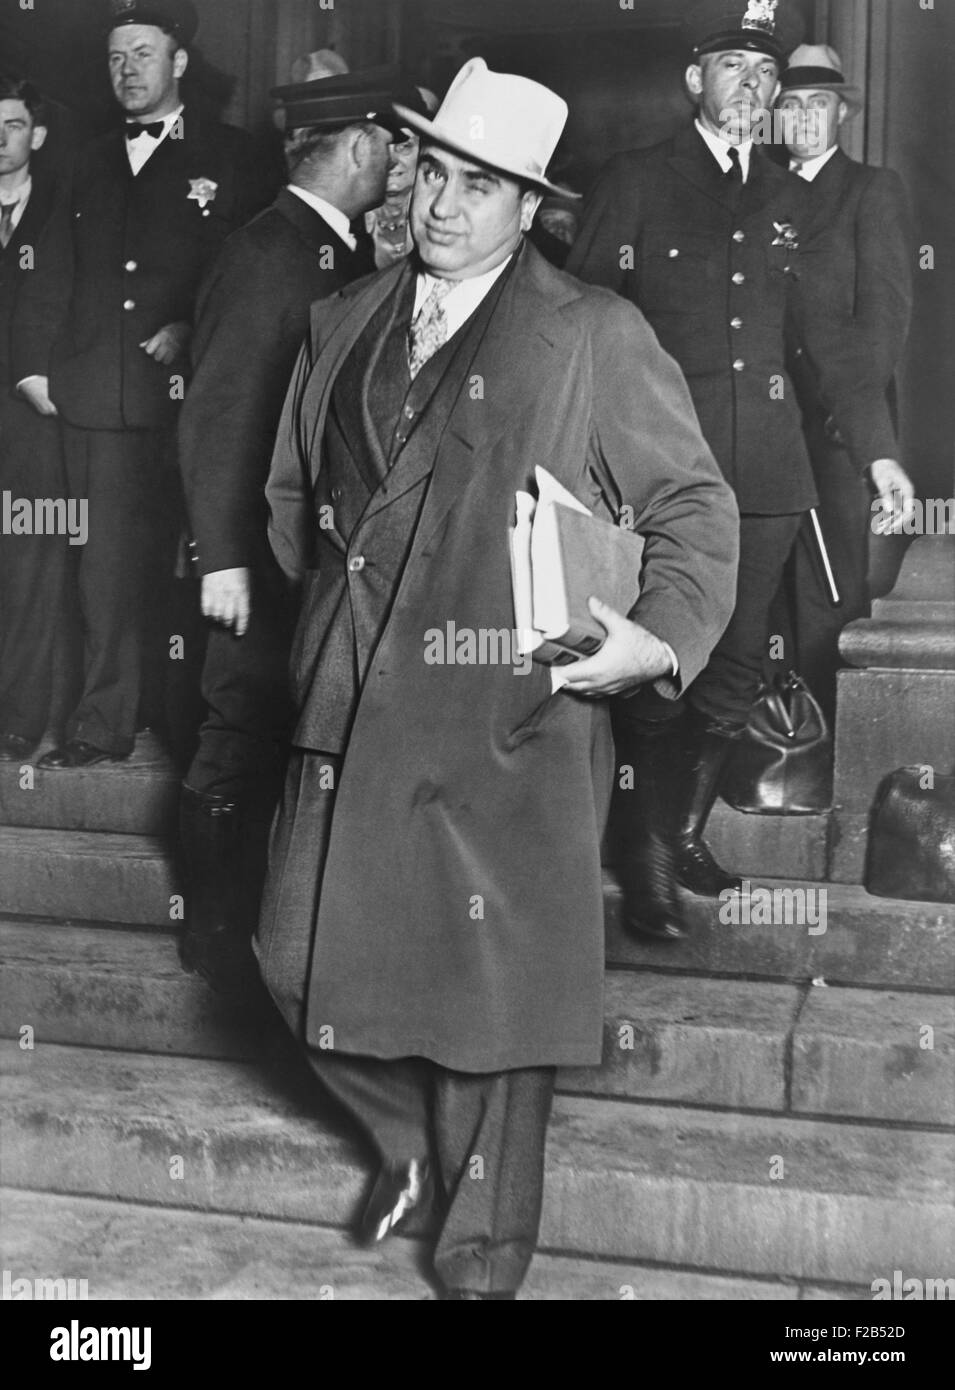 Al Capone, zwinkert Fotografen, als er Chicagos Bundesgericht geht. 14. Oktober 1931. Die berüchtigte Chicago Gangster wurde vor Gericht wegen Steuerhinterziehung. -(BSLOC 2015 1 13) Stockfoto